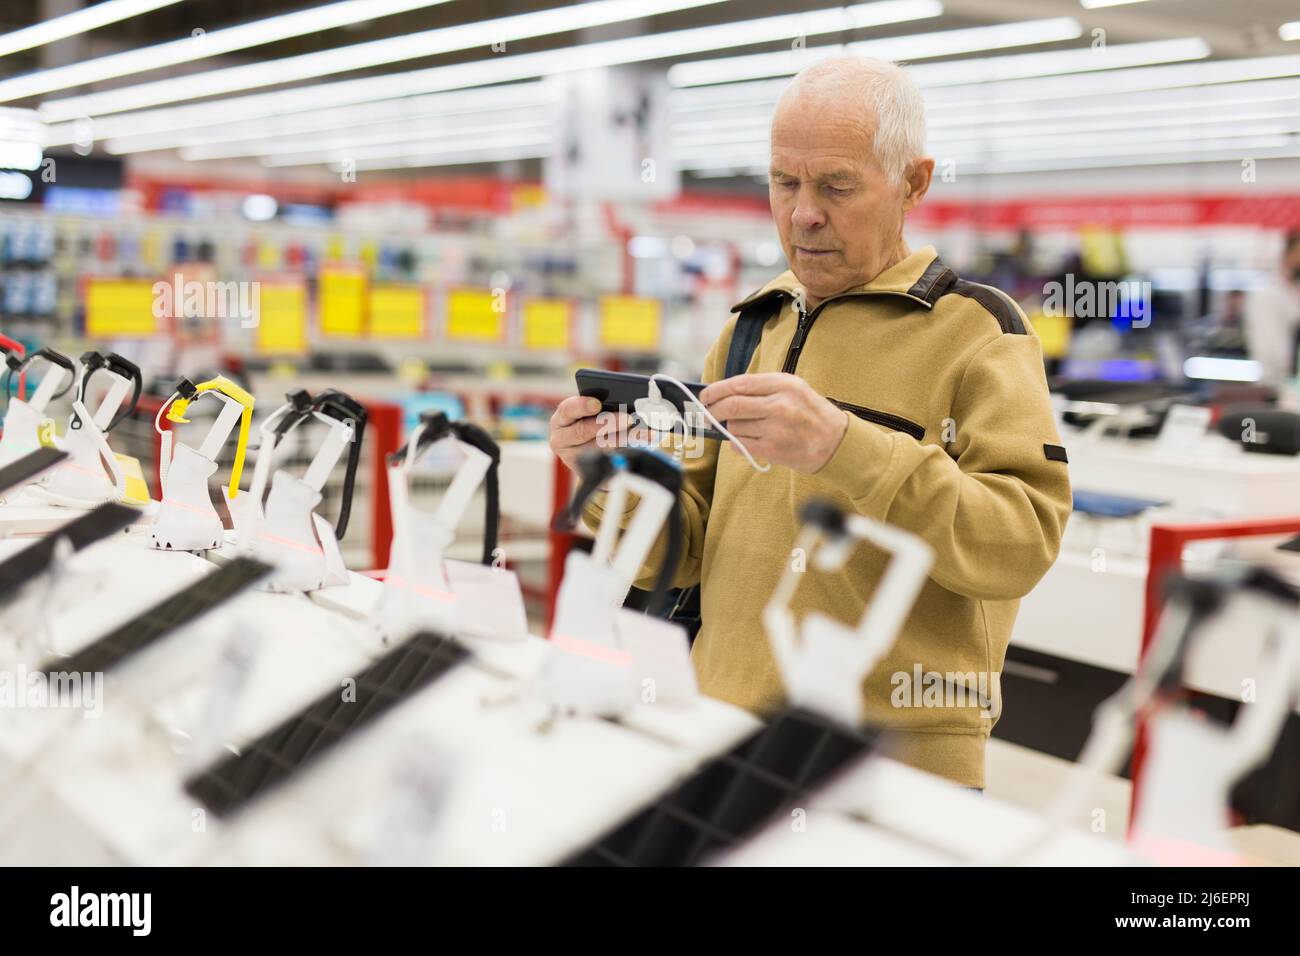 l'uomo anziano esamina il computer tablet nello showroom del negozio di elettronica Foto Stock